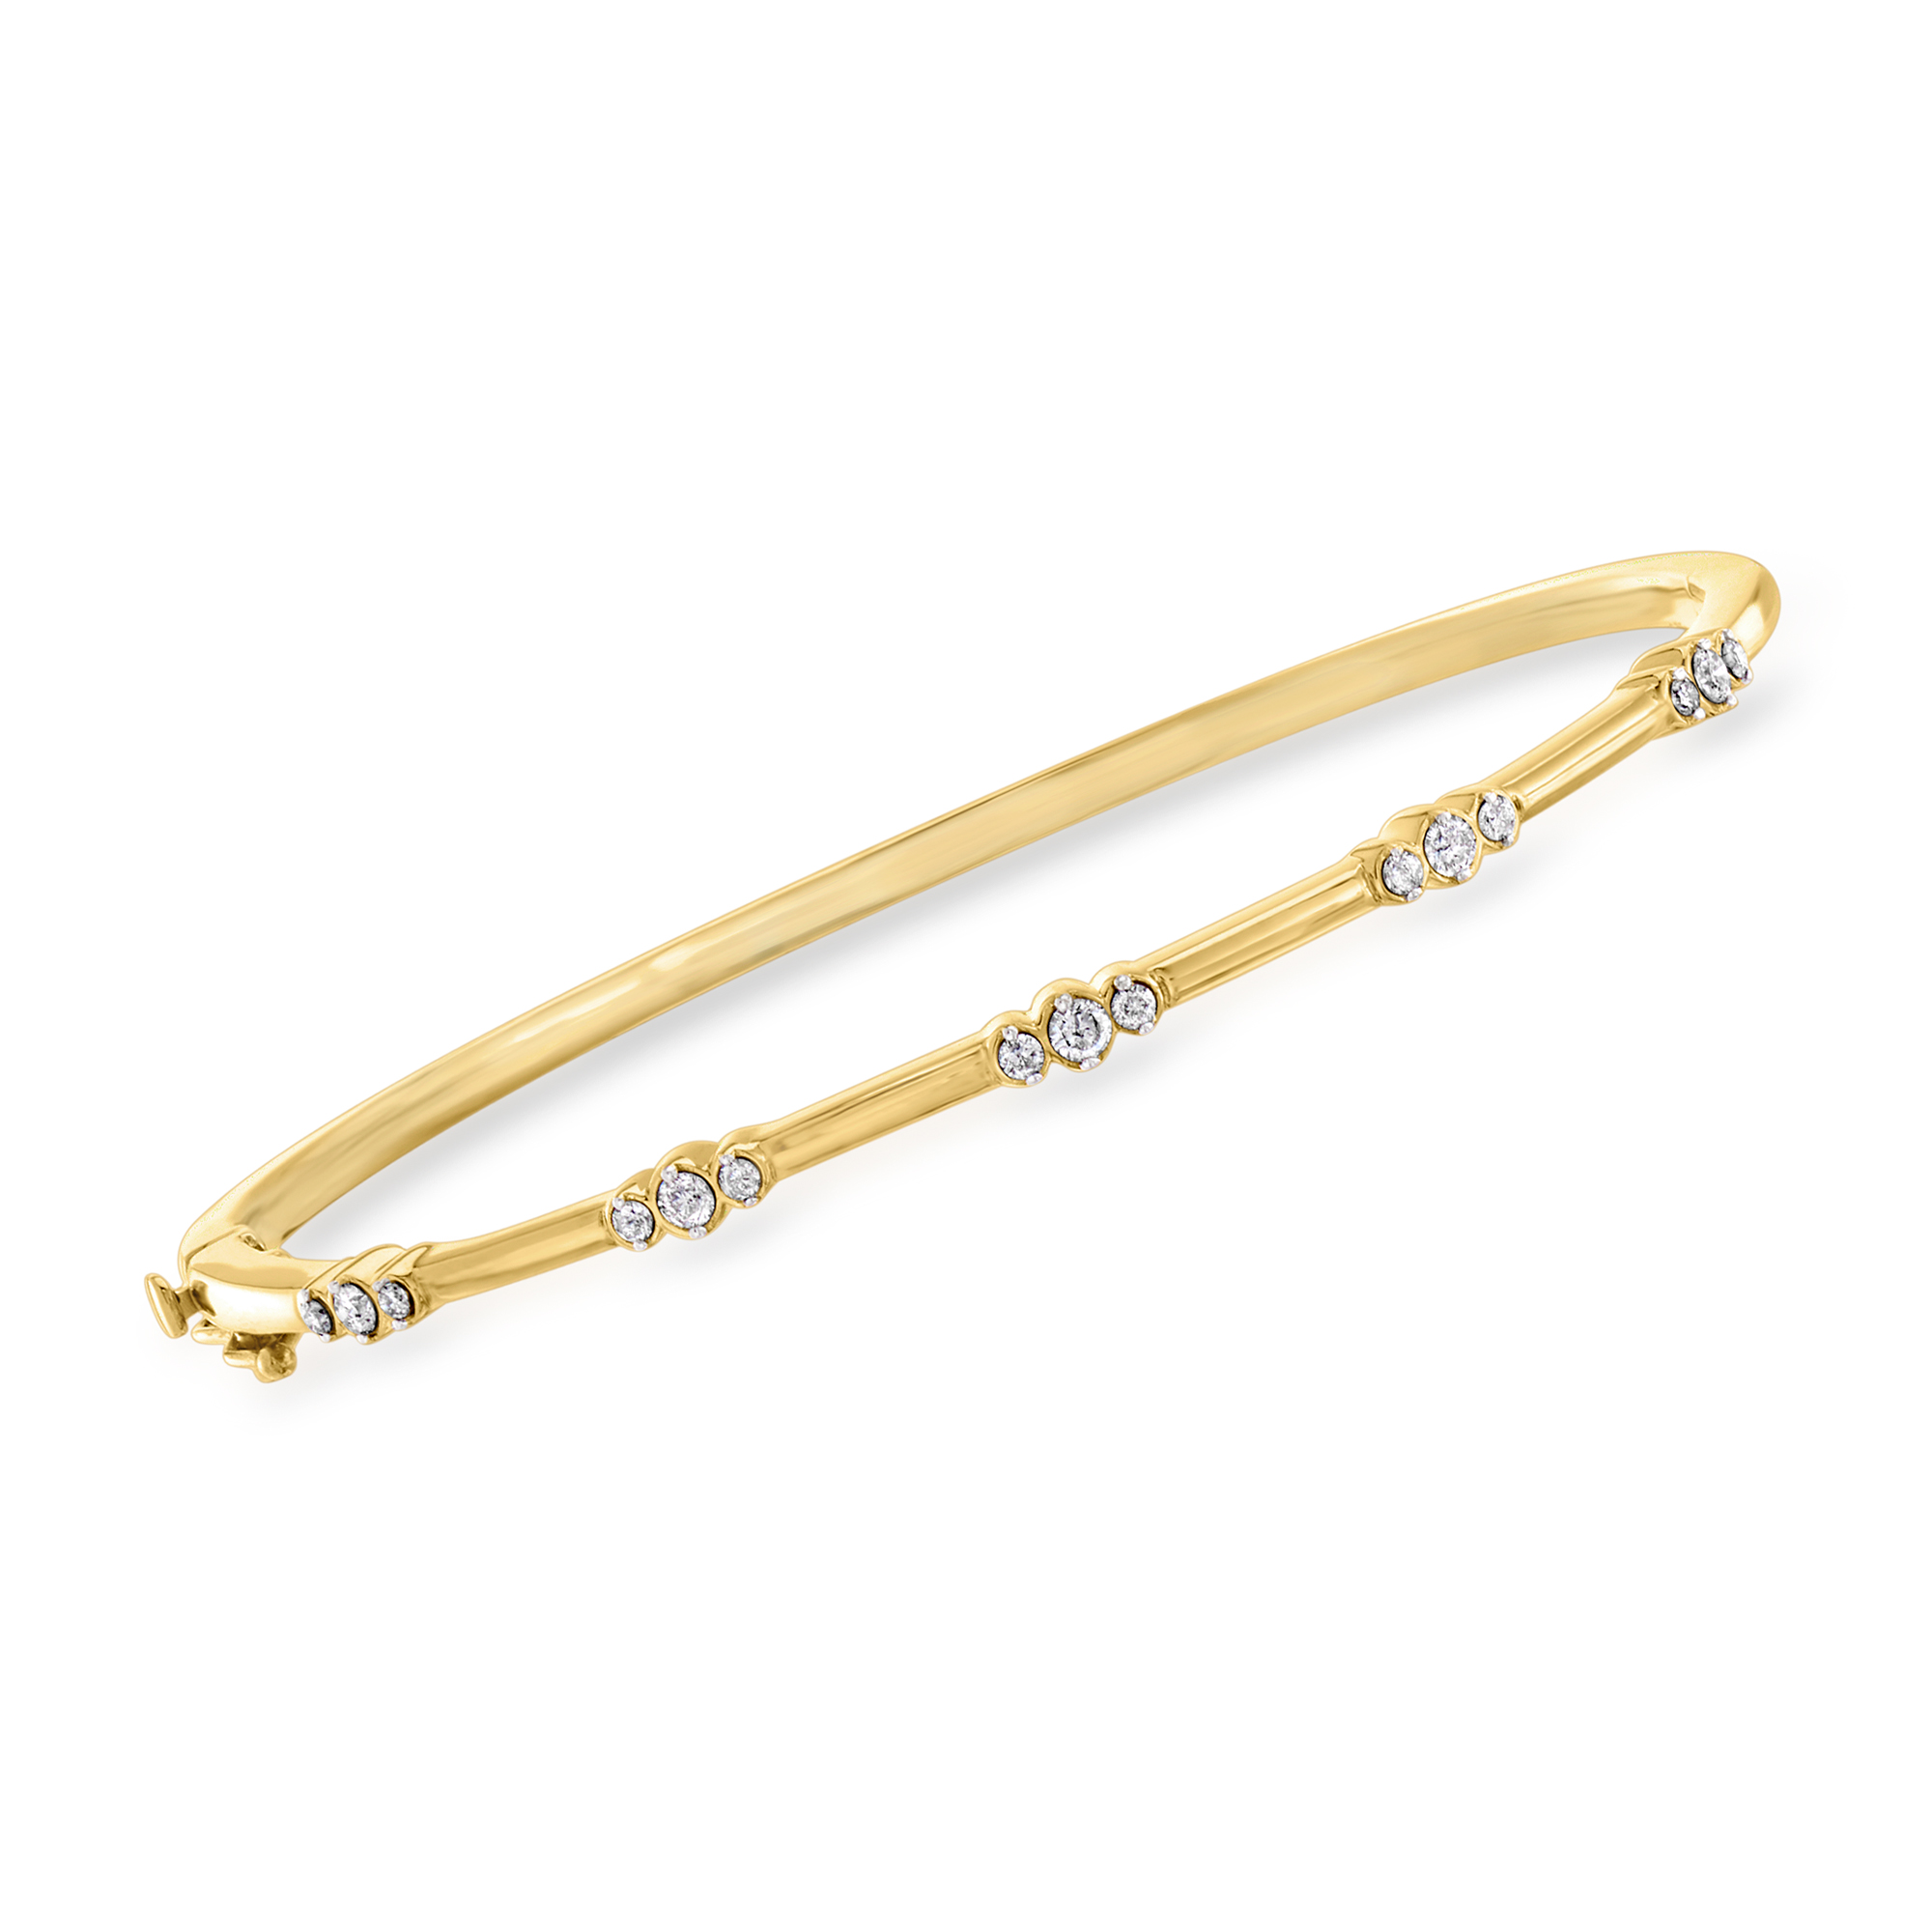 TOKENZ Dazzling CZ Stone Studded Heart Design Elegant Golden Bangle Bracelet for Women and Girls for Girlfriend